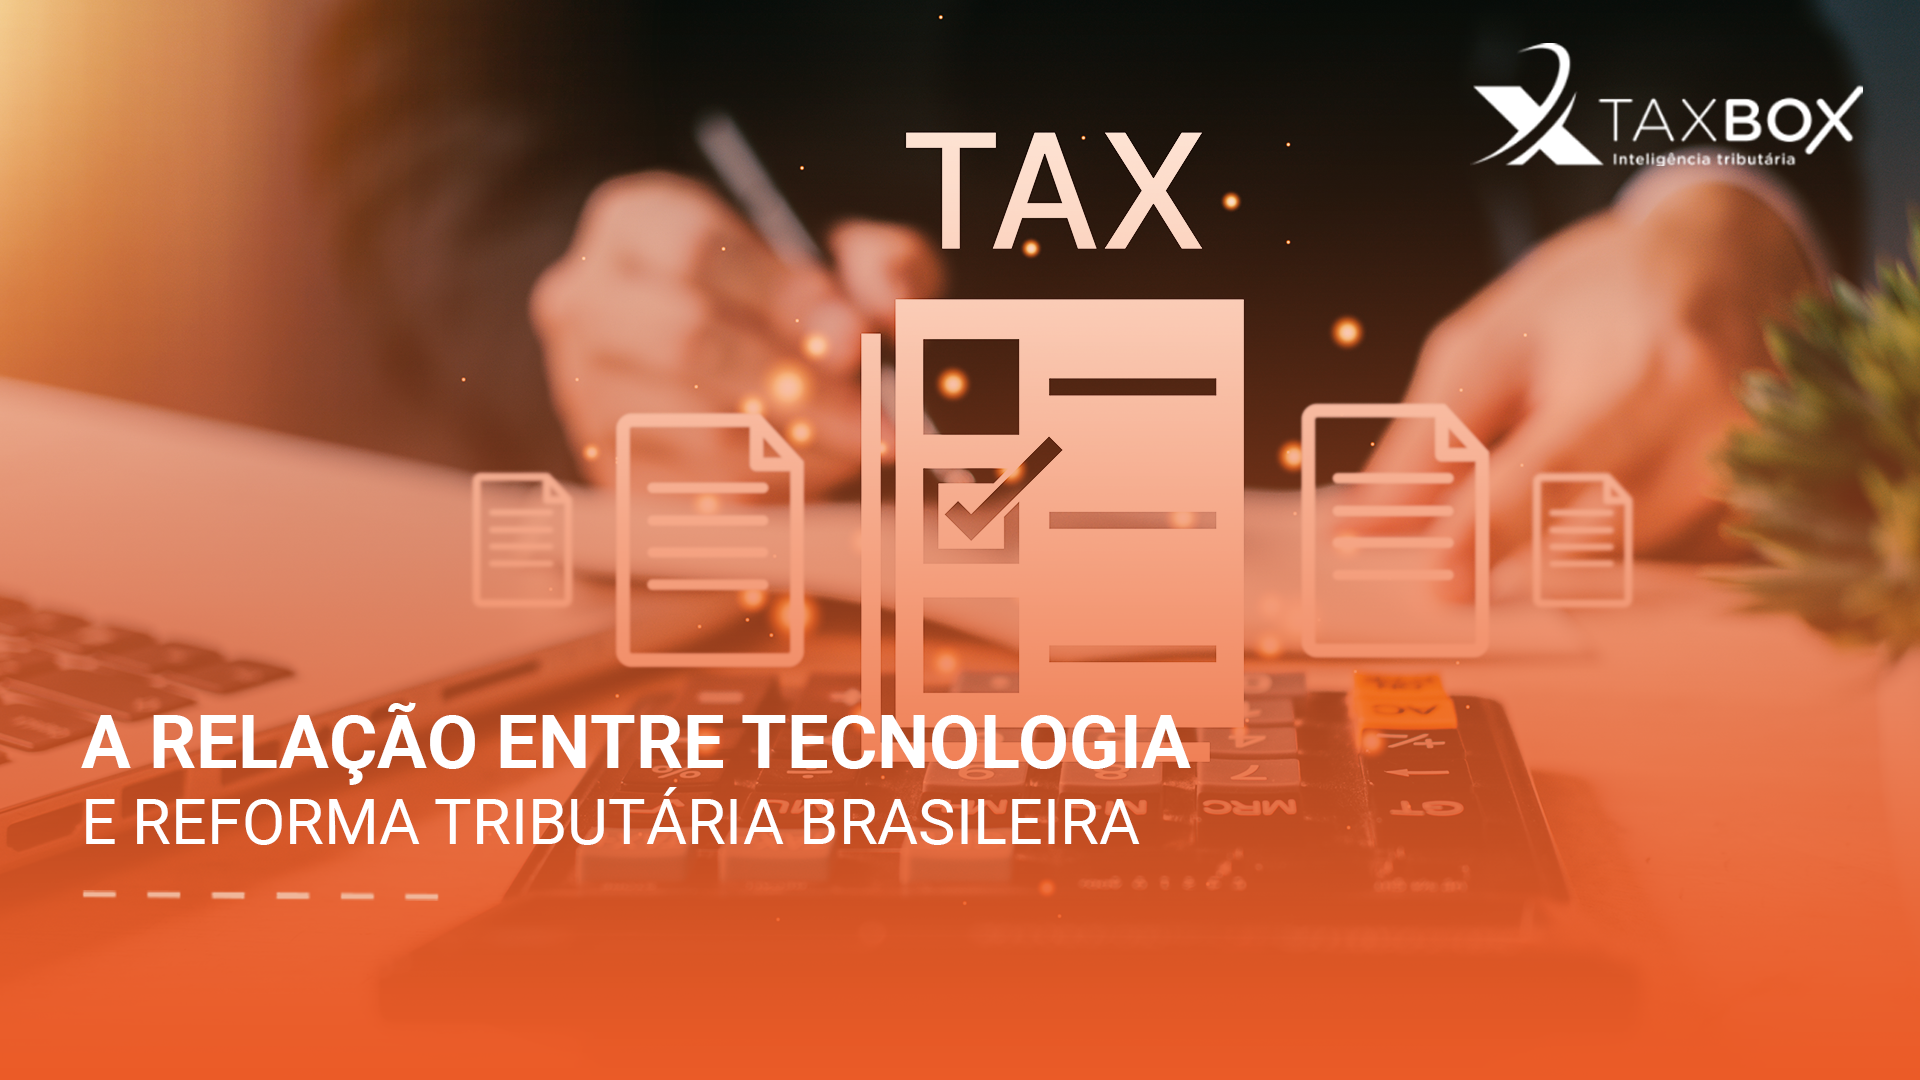 A relação entre tecnologia e reforma tributária brasileira